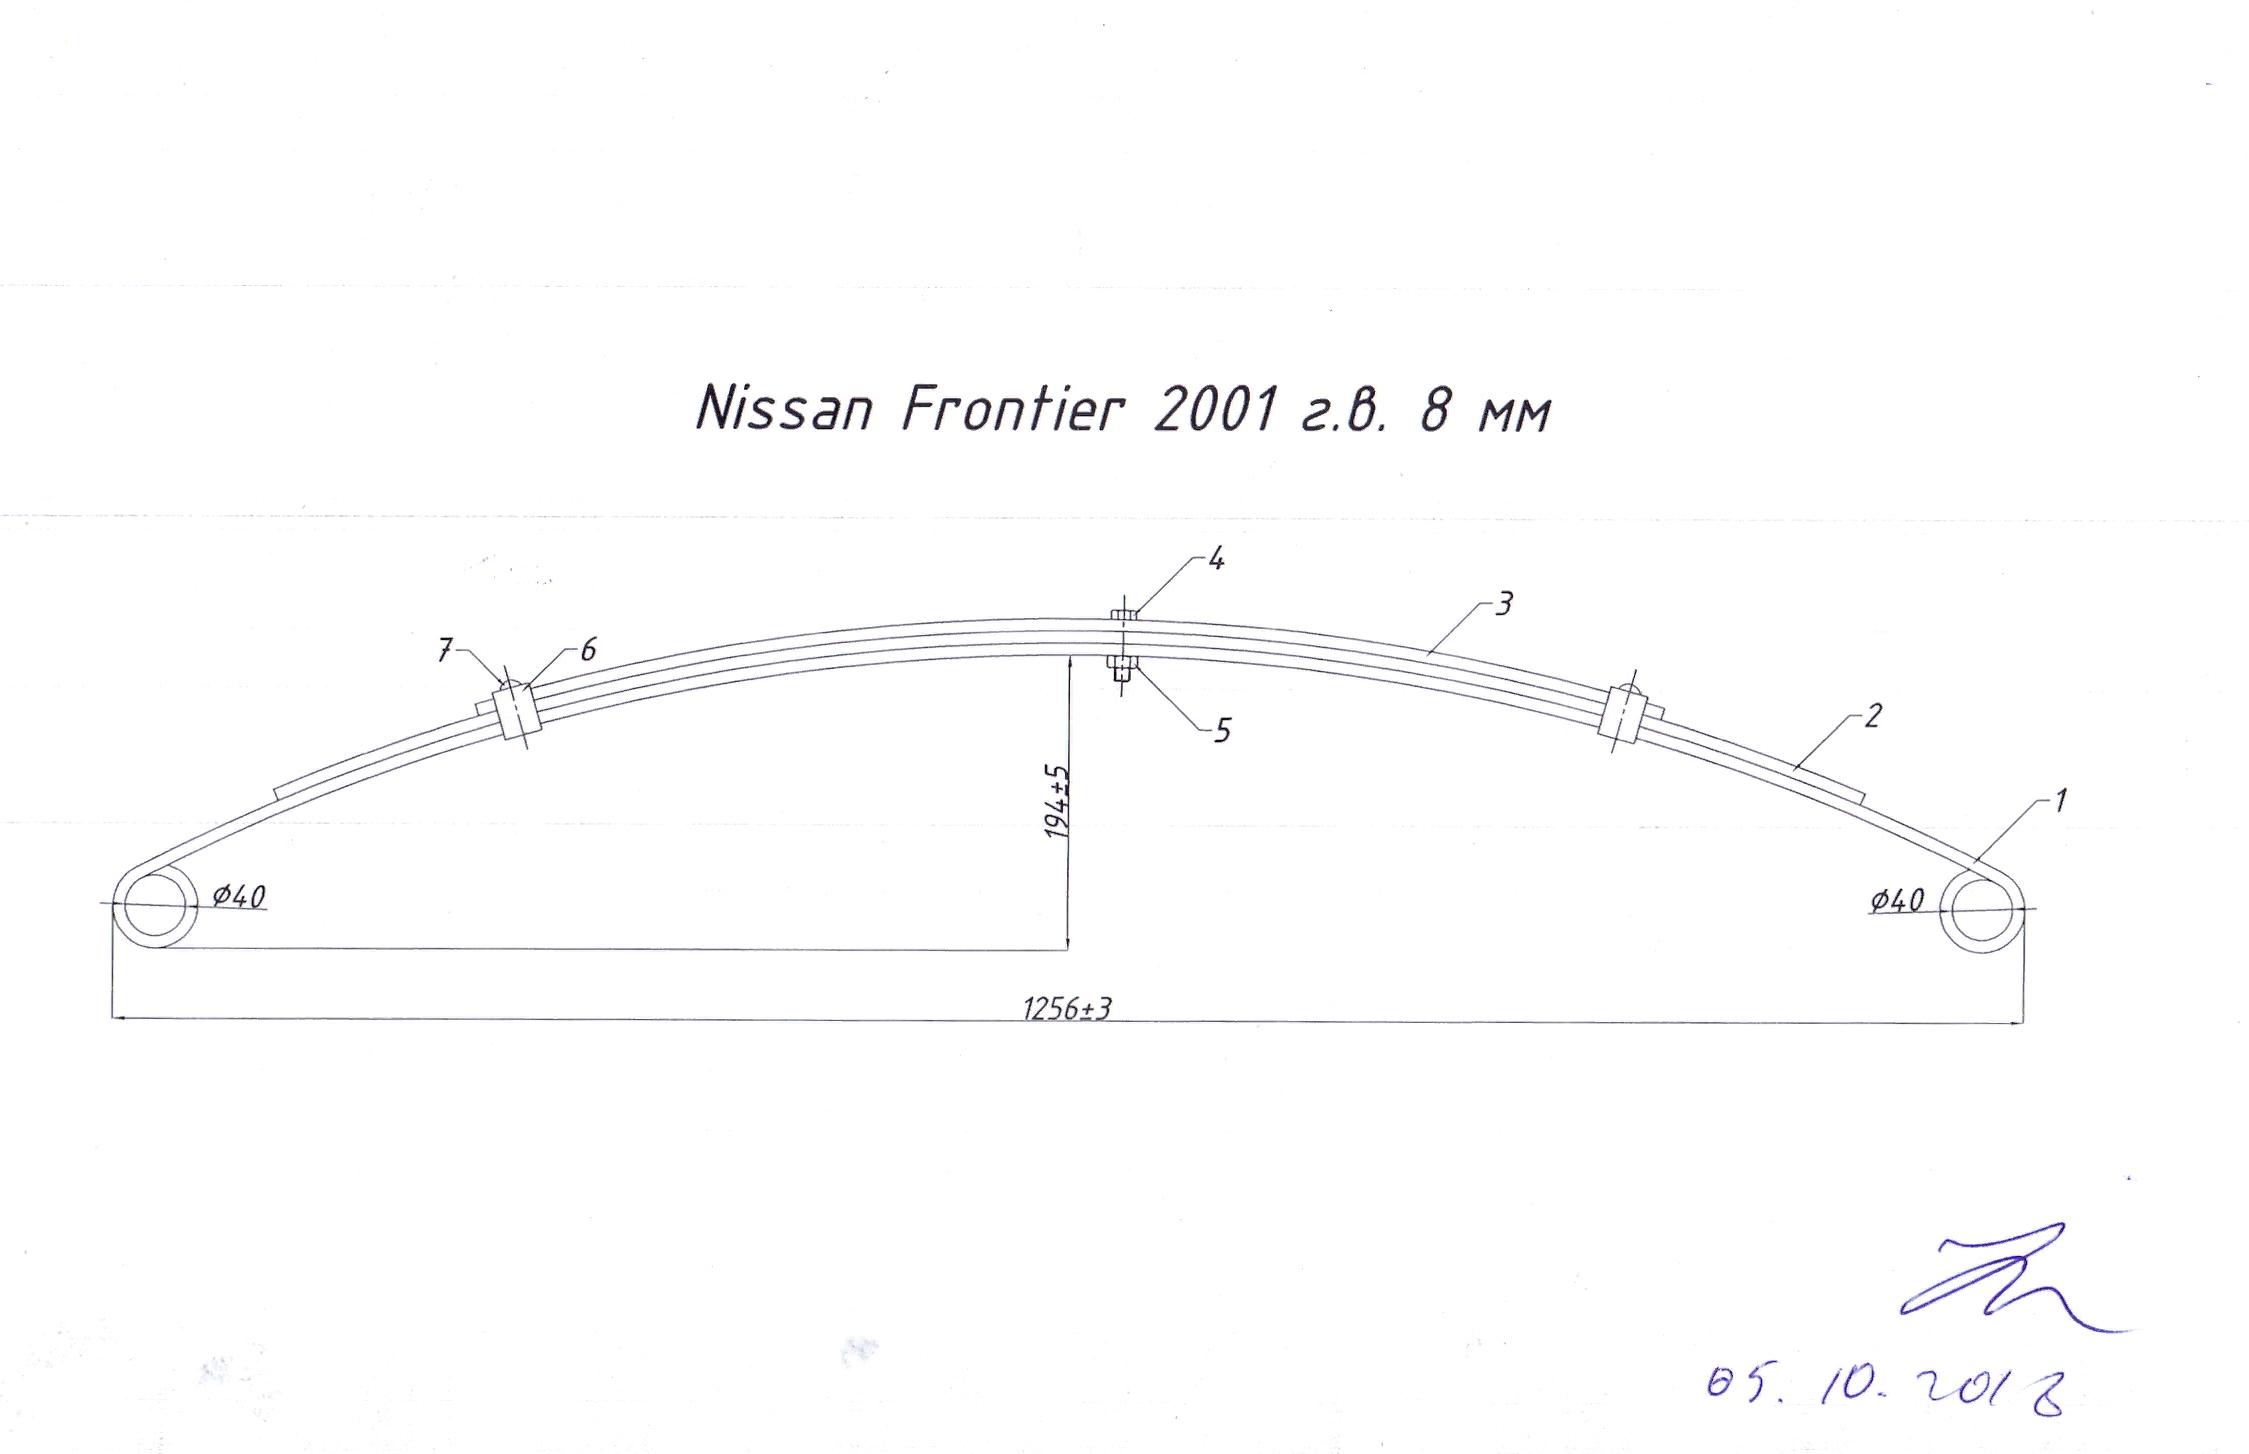 NISSAN FRONTIER (D22) 1998-2007  г.в. рессора в сборе (Арт. IR 10-38в)
Рессора укомплектована втулками.
Сечение листа 60*8 мм,